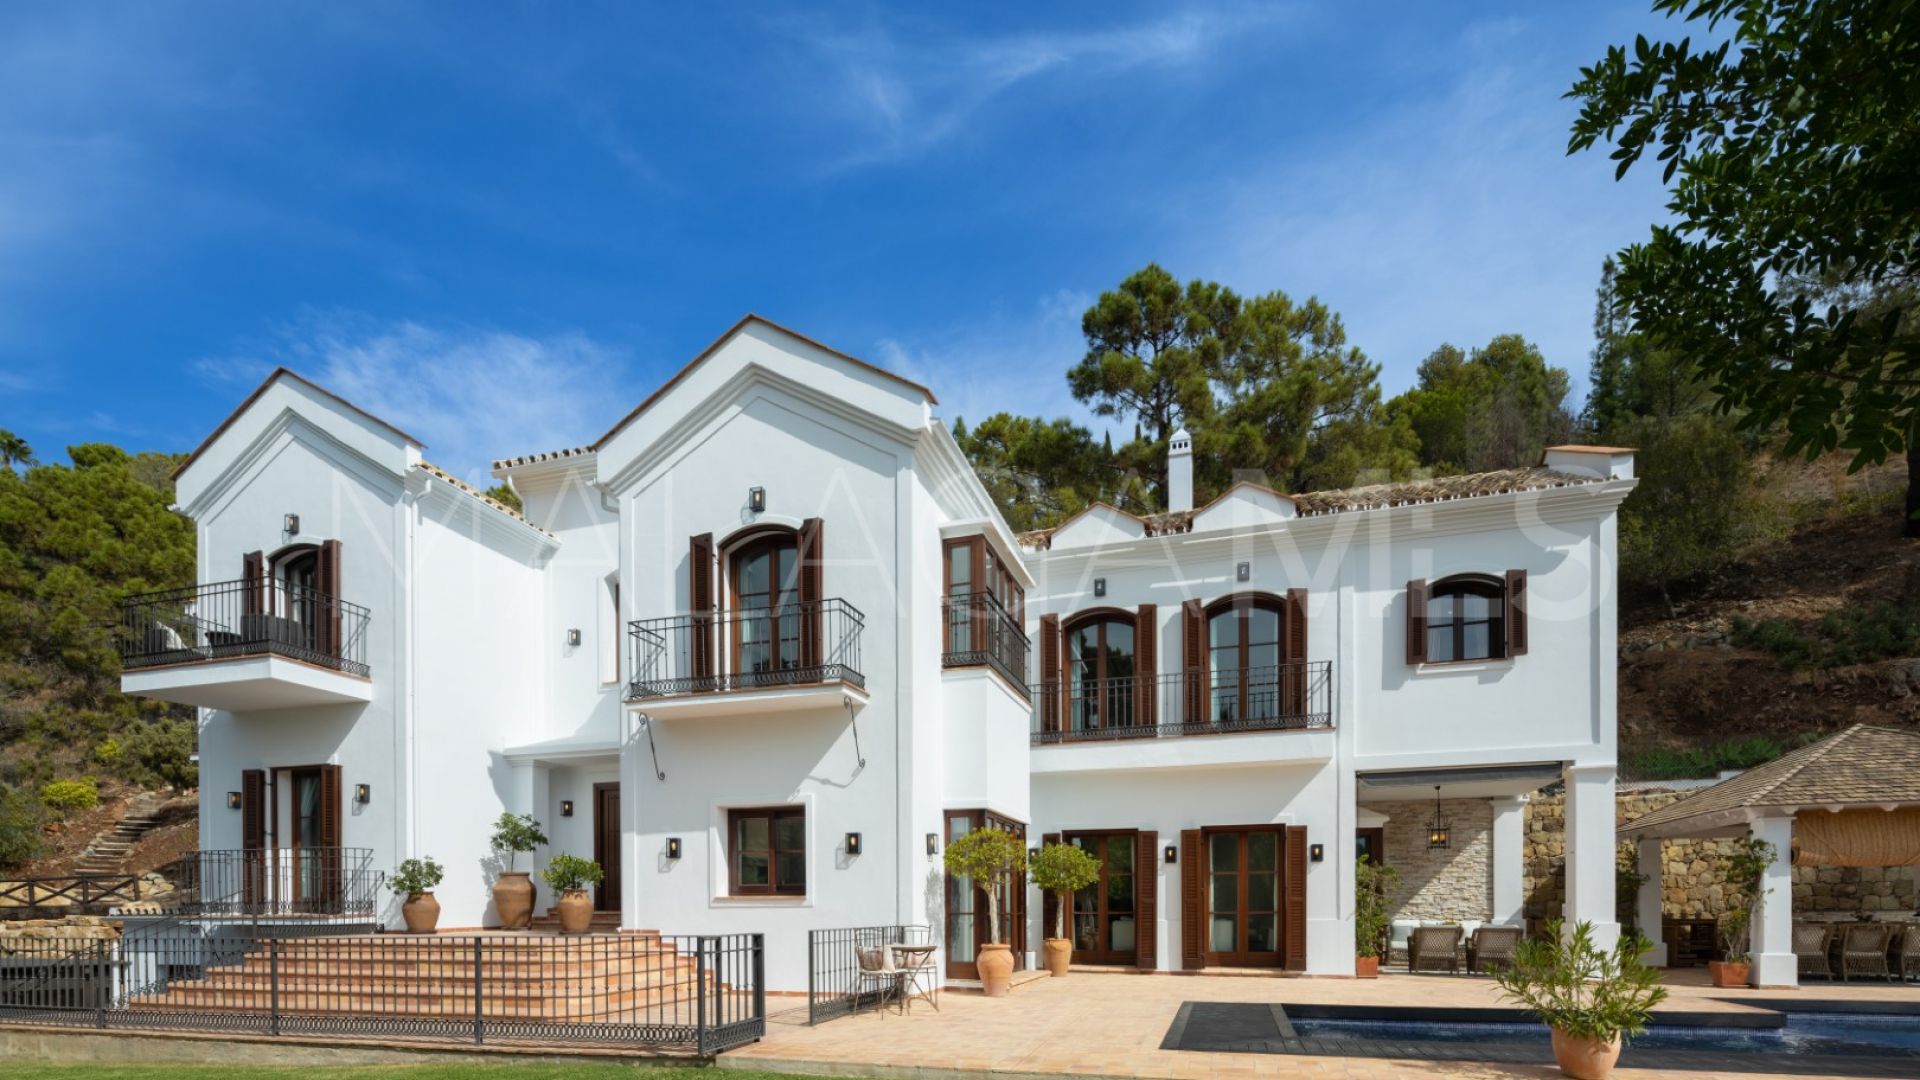 For sale El Madroñal villa with 6 bedrooms